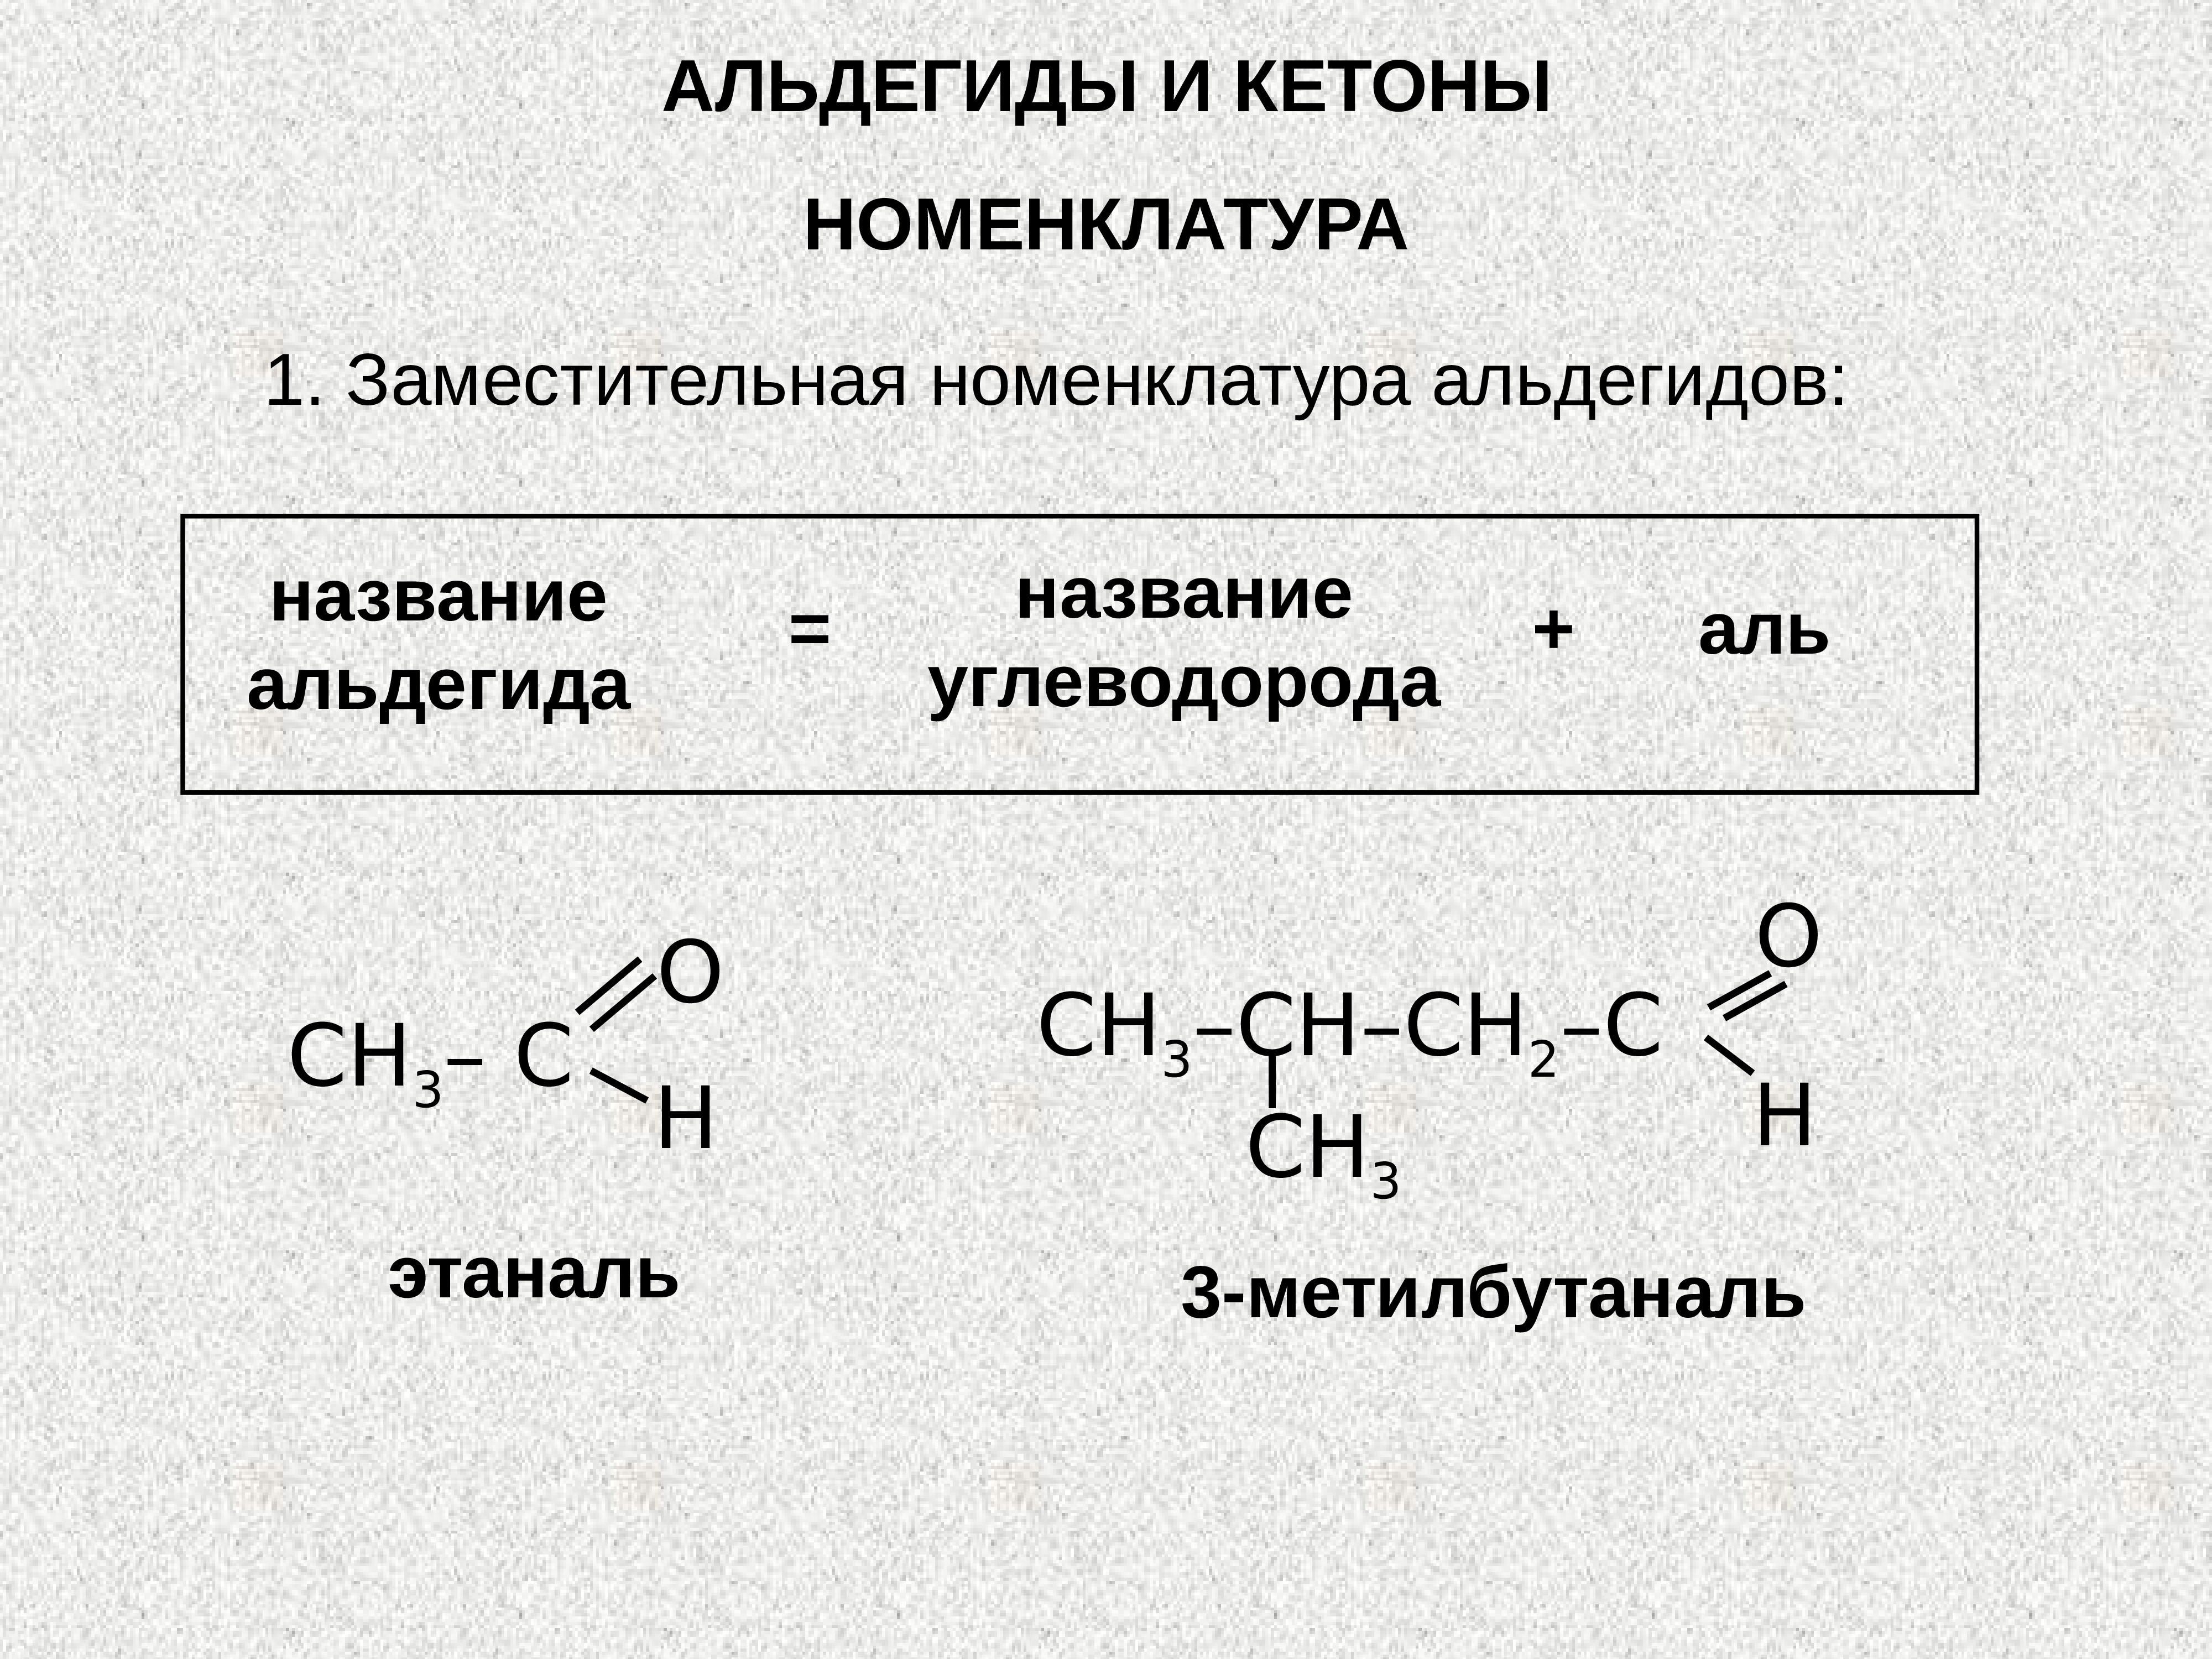 Этаналь н. Альдегиды и кетоны номенклатура. Альдегиды строение и номенклатура. Кетоны и альдегиды c8h10o. Заместительная номенклатура кетоны.